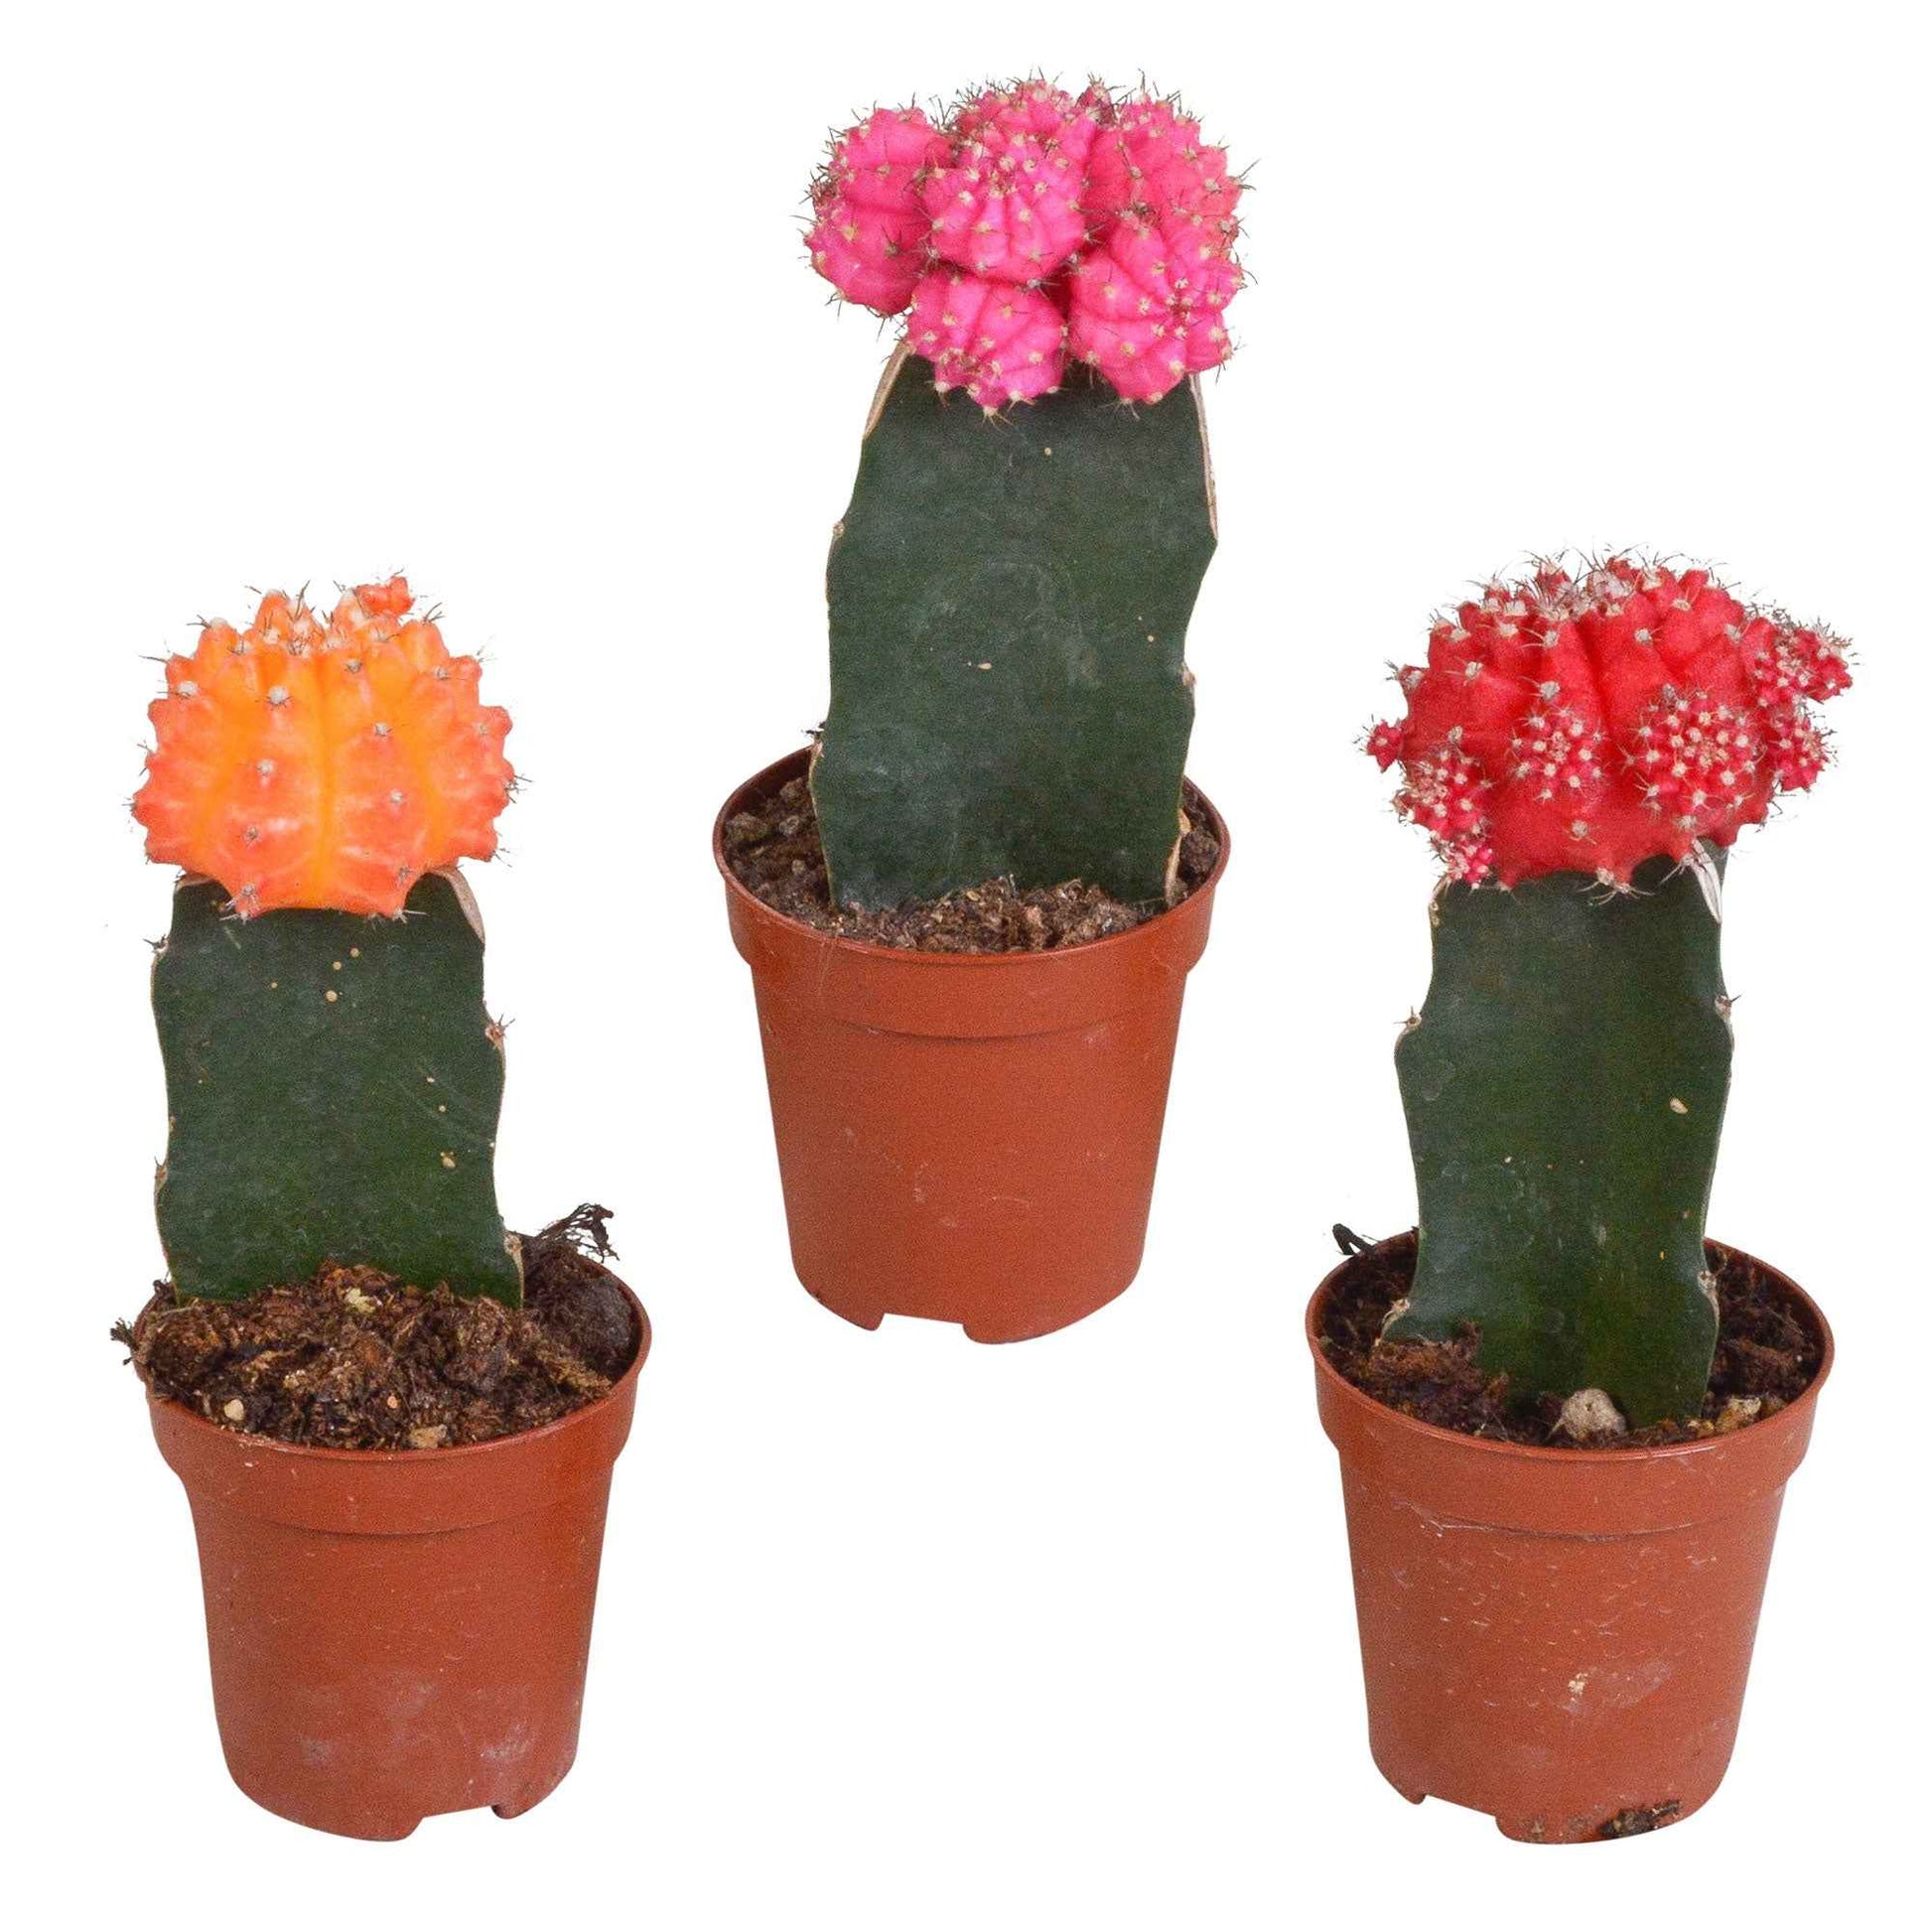 ontsmettingsmiddel overdrijven als Koop nu kamerplant 3 Cactus Gymnocalycium mihanovichii Rood-Oranje-Roze |  Bakker.com